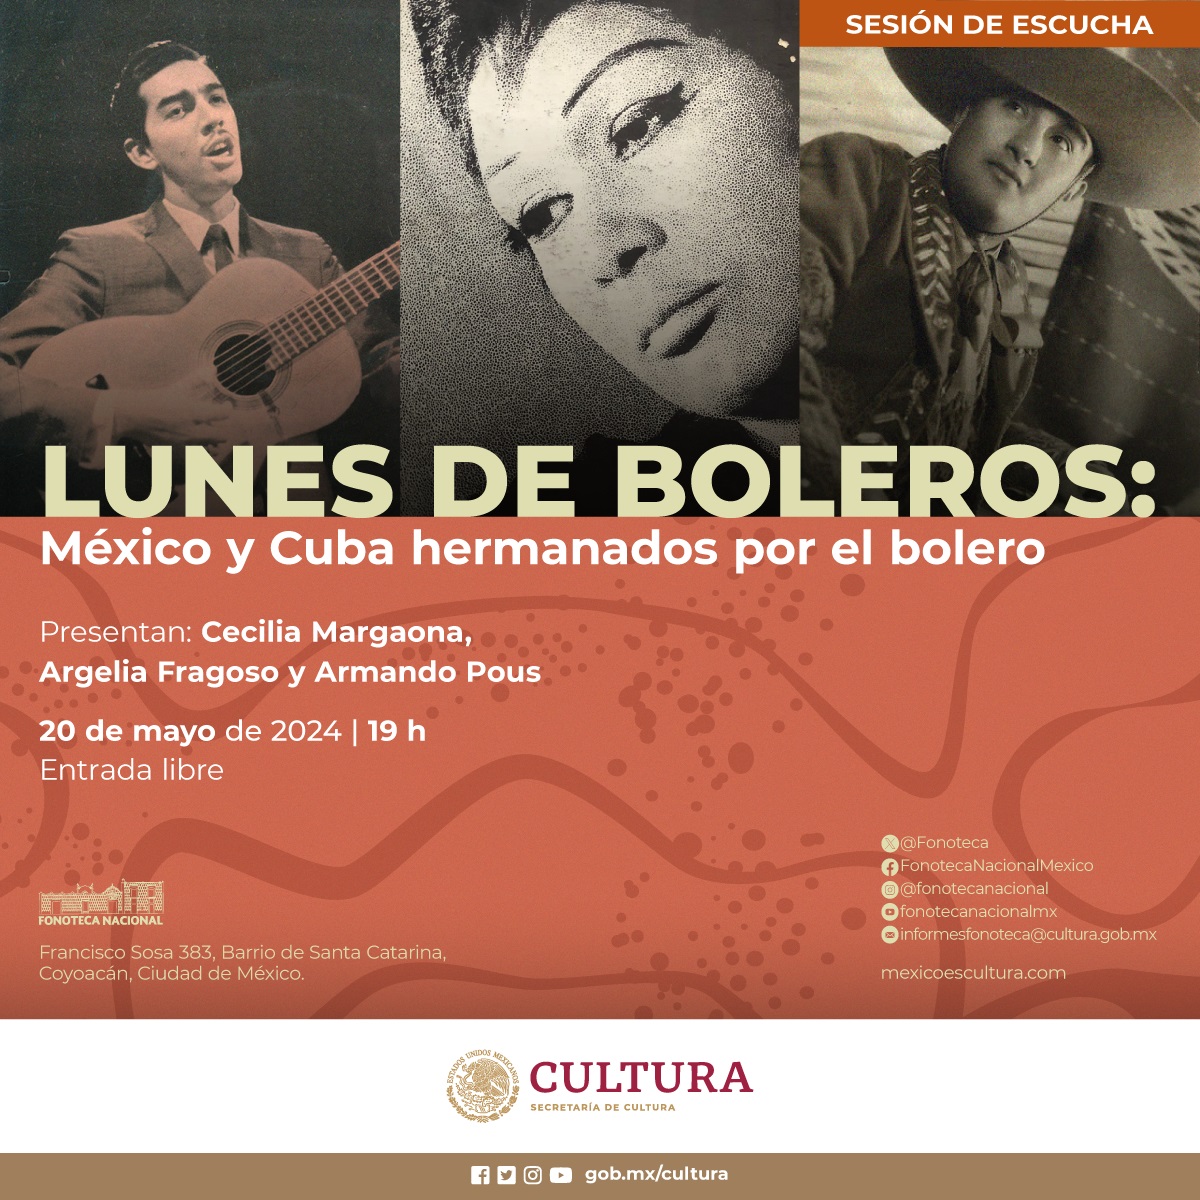 La @Fonoteca Nacional presenta la sesión de escucha 'México y Cuba hermanados por el Bolero' 🇲🇽 🤝 🇨🇺 🔹 Se realizará un recorrido musical a través de los boleros más emblemáticos de ambos países. 🔗 shorturl.at/kuGS6